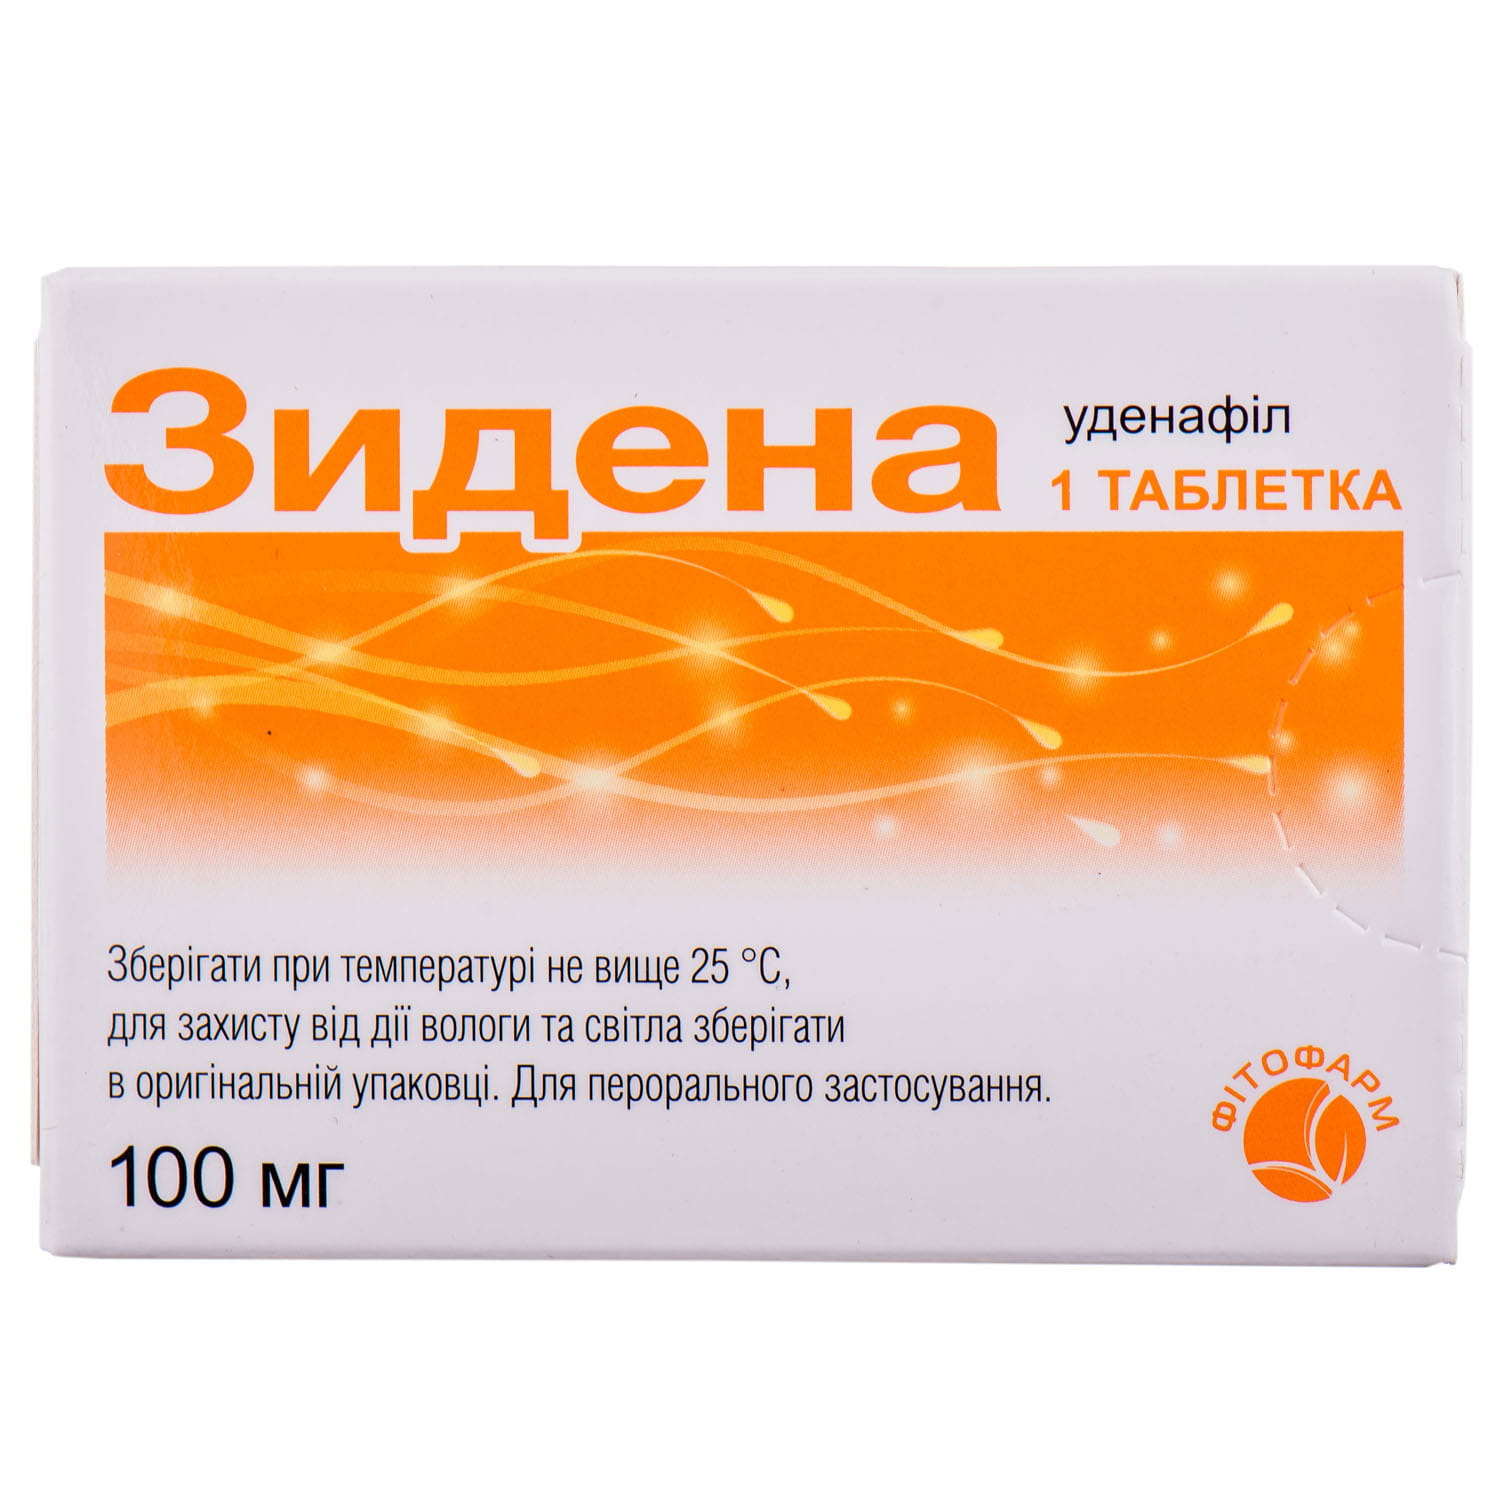 Зидена таблетки покрытые пленочной оболочкой по 100 мг блистер 1 шт .